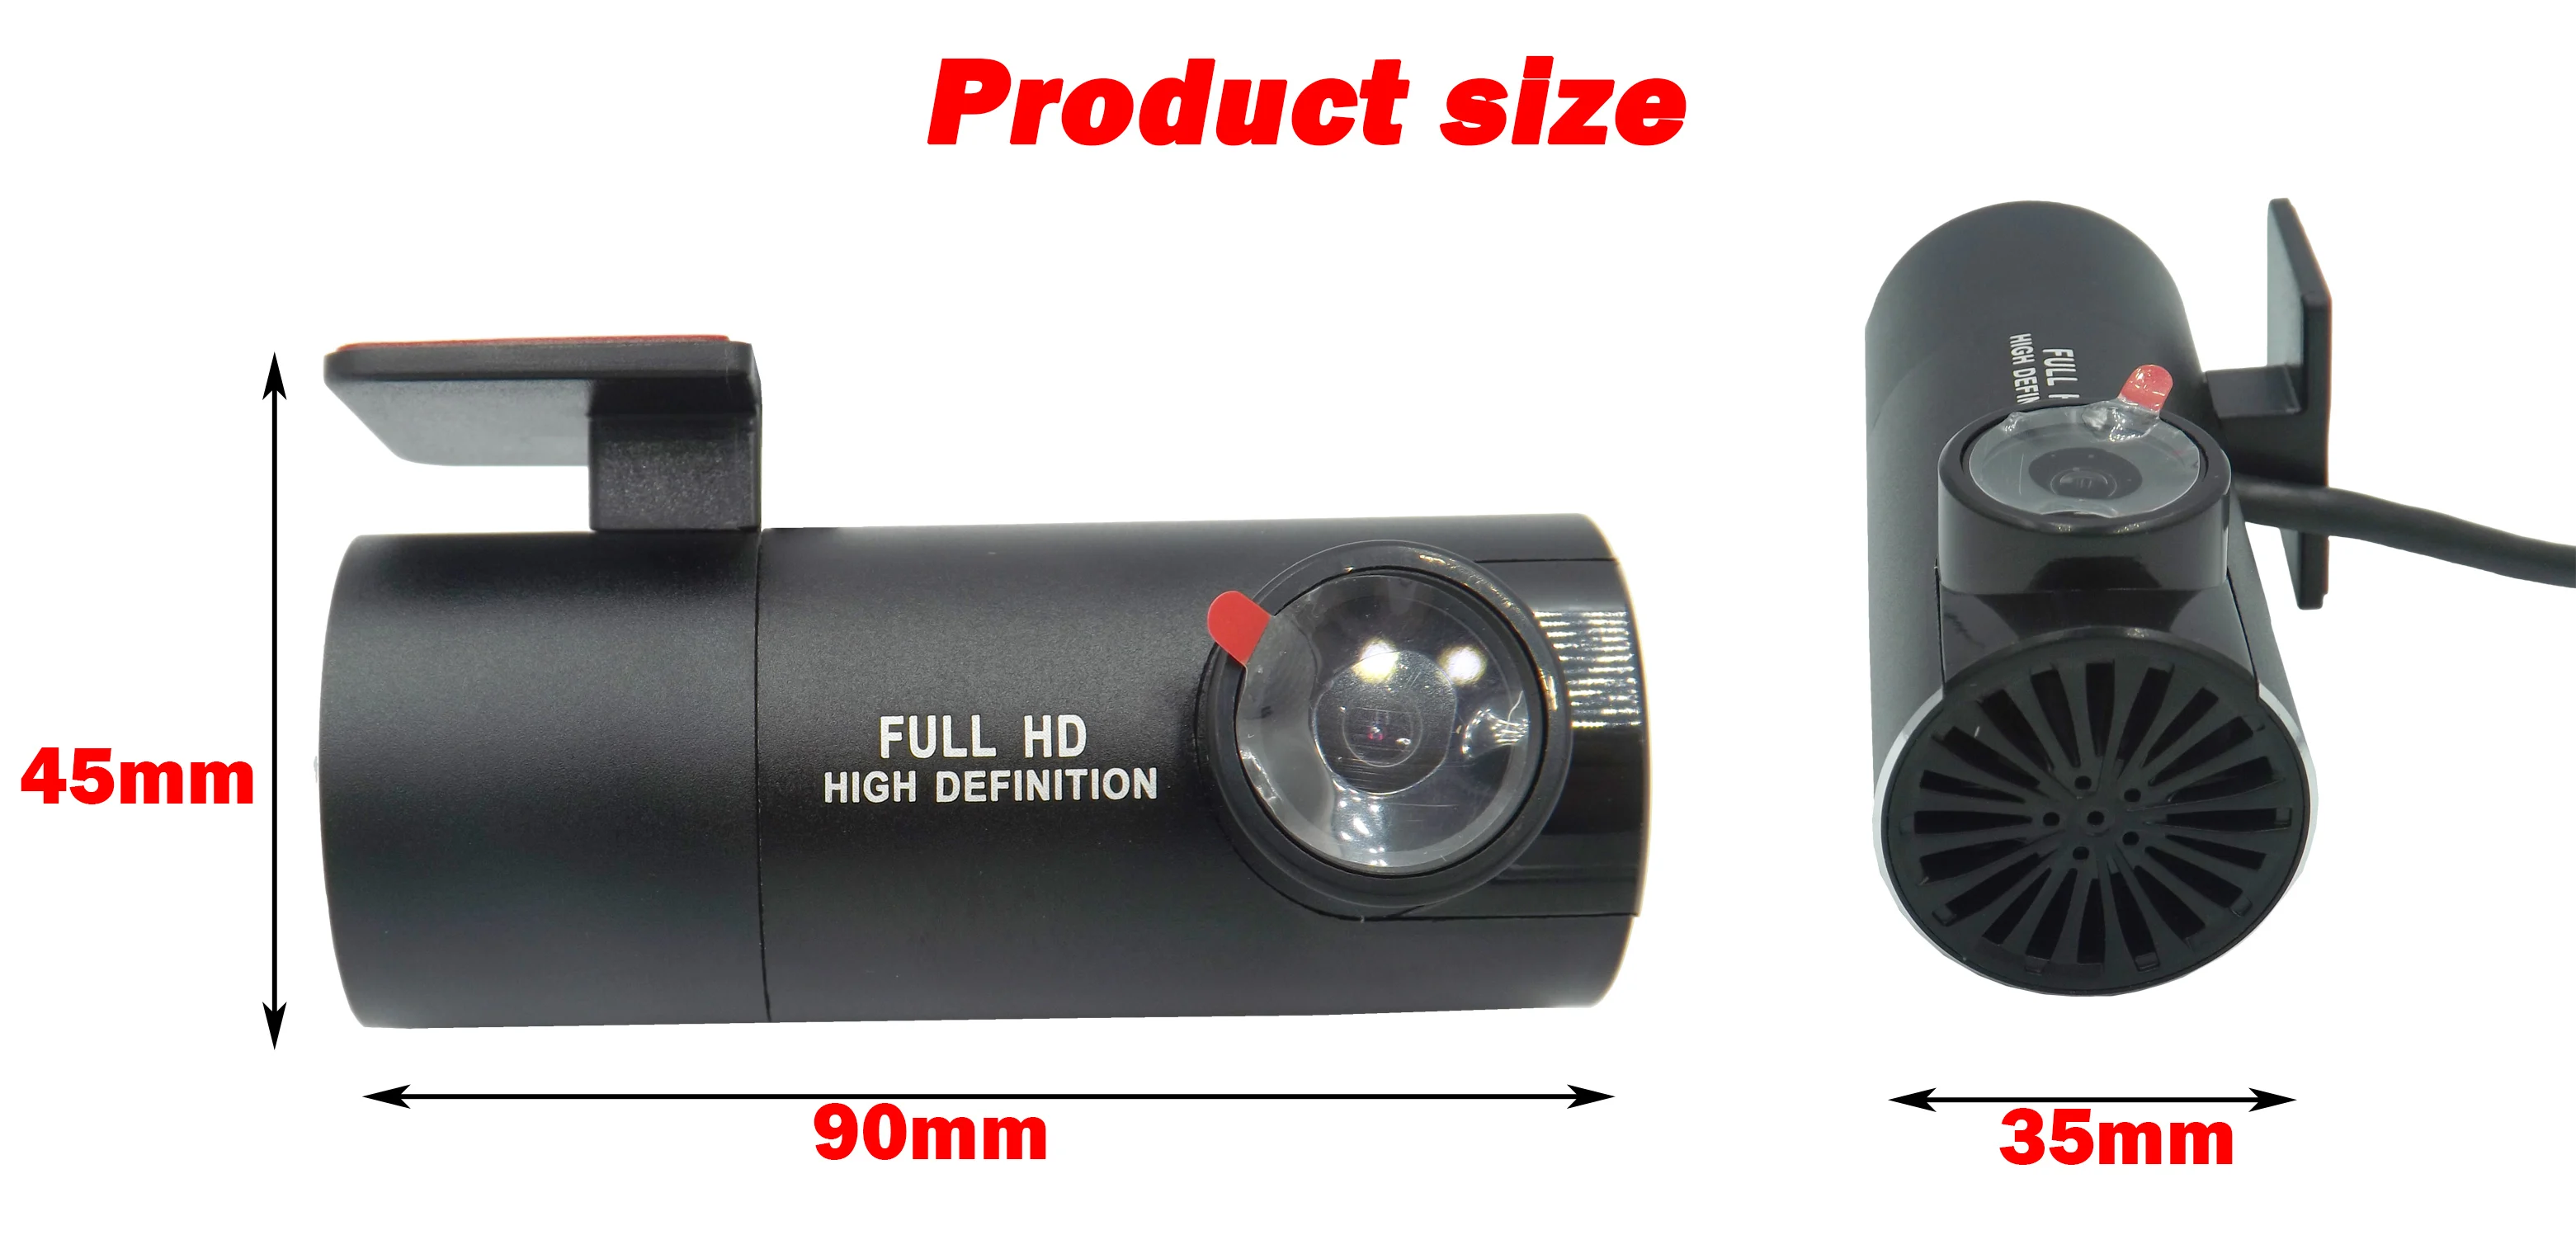 USB DVR камера мини портативный автомобильный DVR 1080P Full HD ночного видения видеорегистратор Регистратор для Android системы